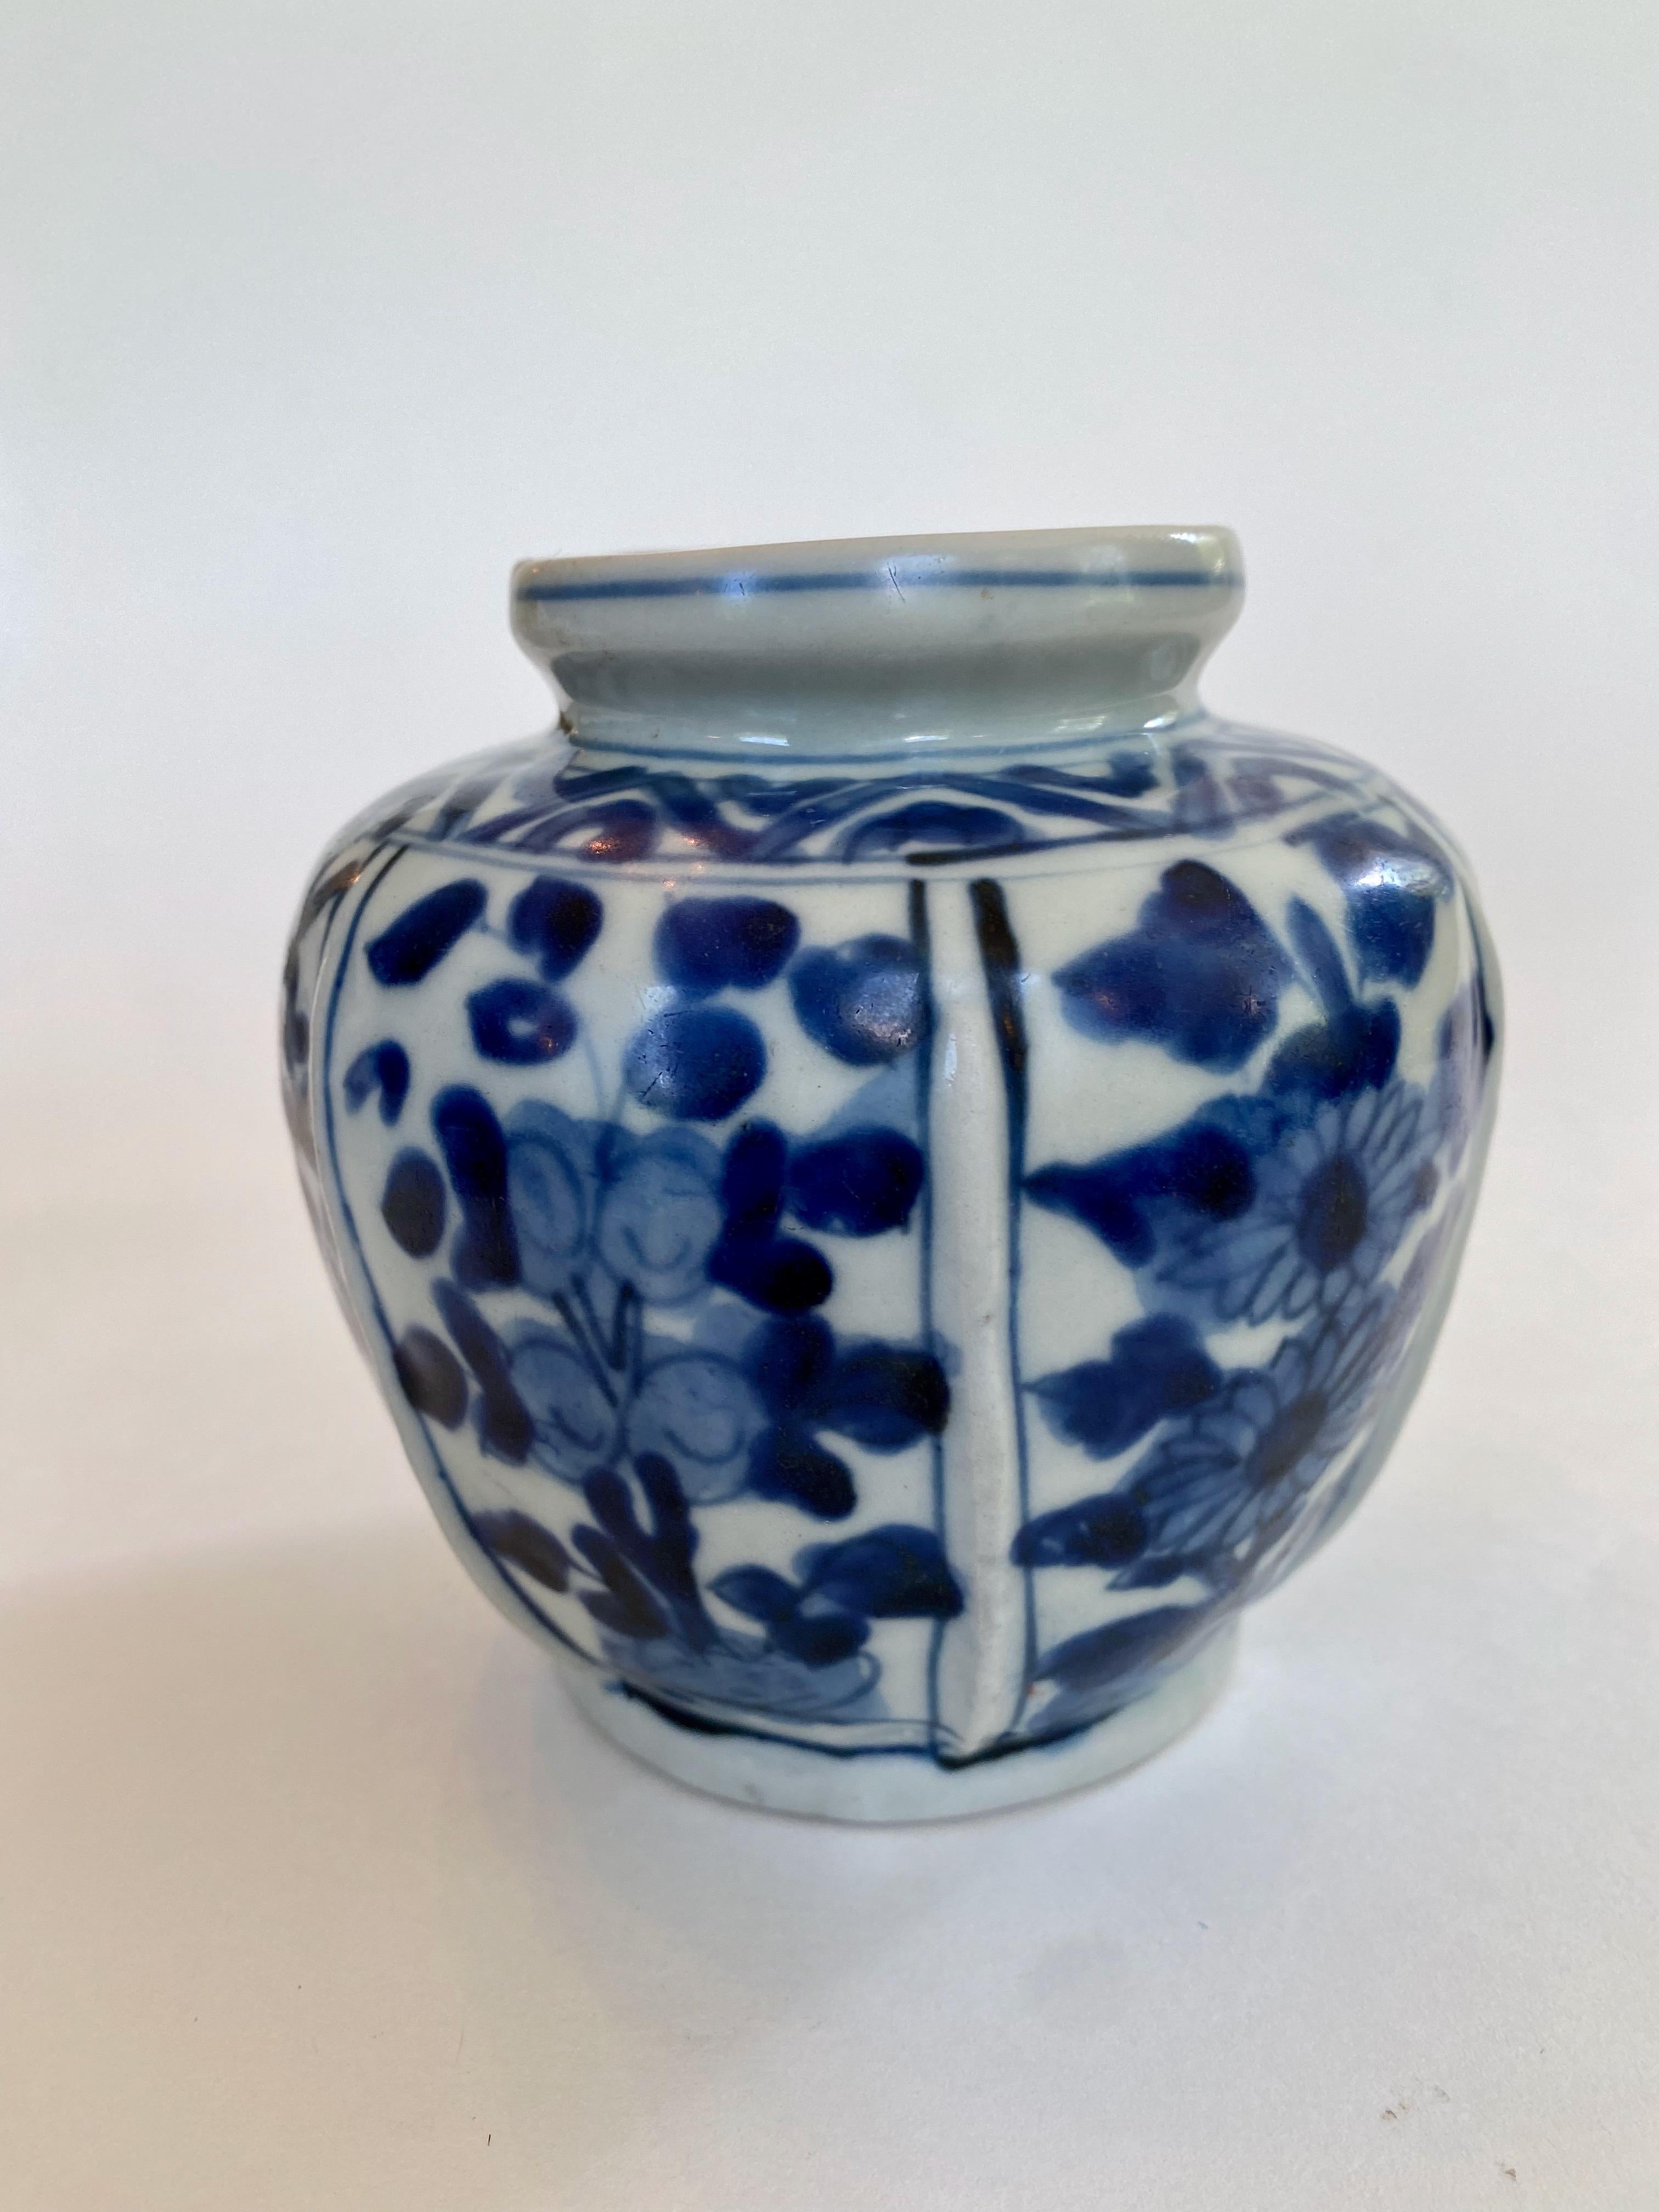 Vase à nervures bleu et blanc de la dynastie Ming, période Wan Li (1563-1620). Les crêtes surélevées de la carrosserie séparent des panneaux de fleurs stylisées peintes avec audace, notamment des tournesols, d'un bleu cobalt éclatant. Le vase